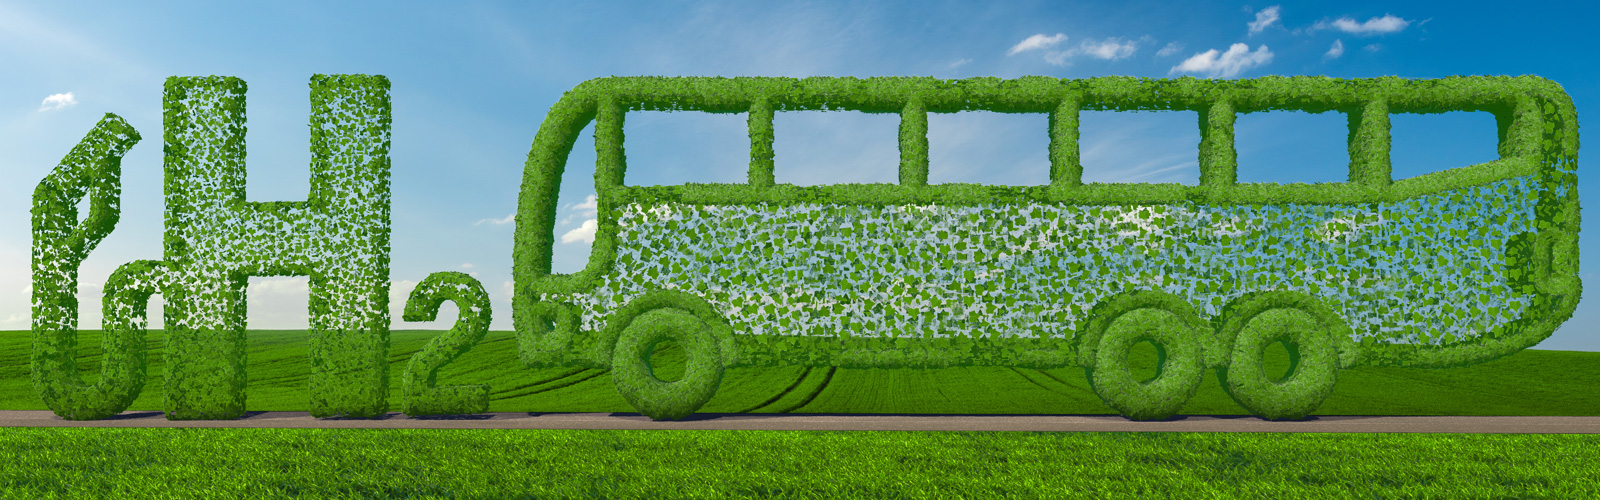 Ein Bus und der Schriftzug 'H2' aus grünen Blättern geformt